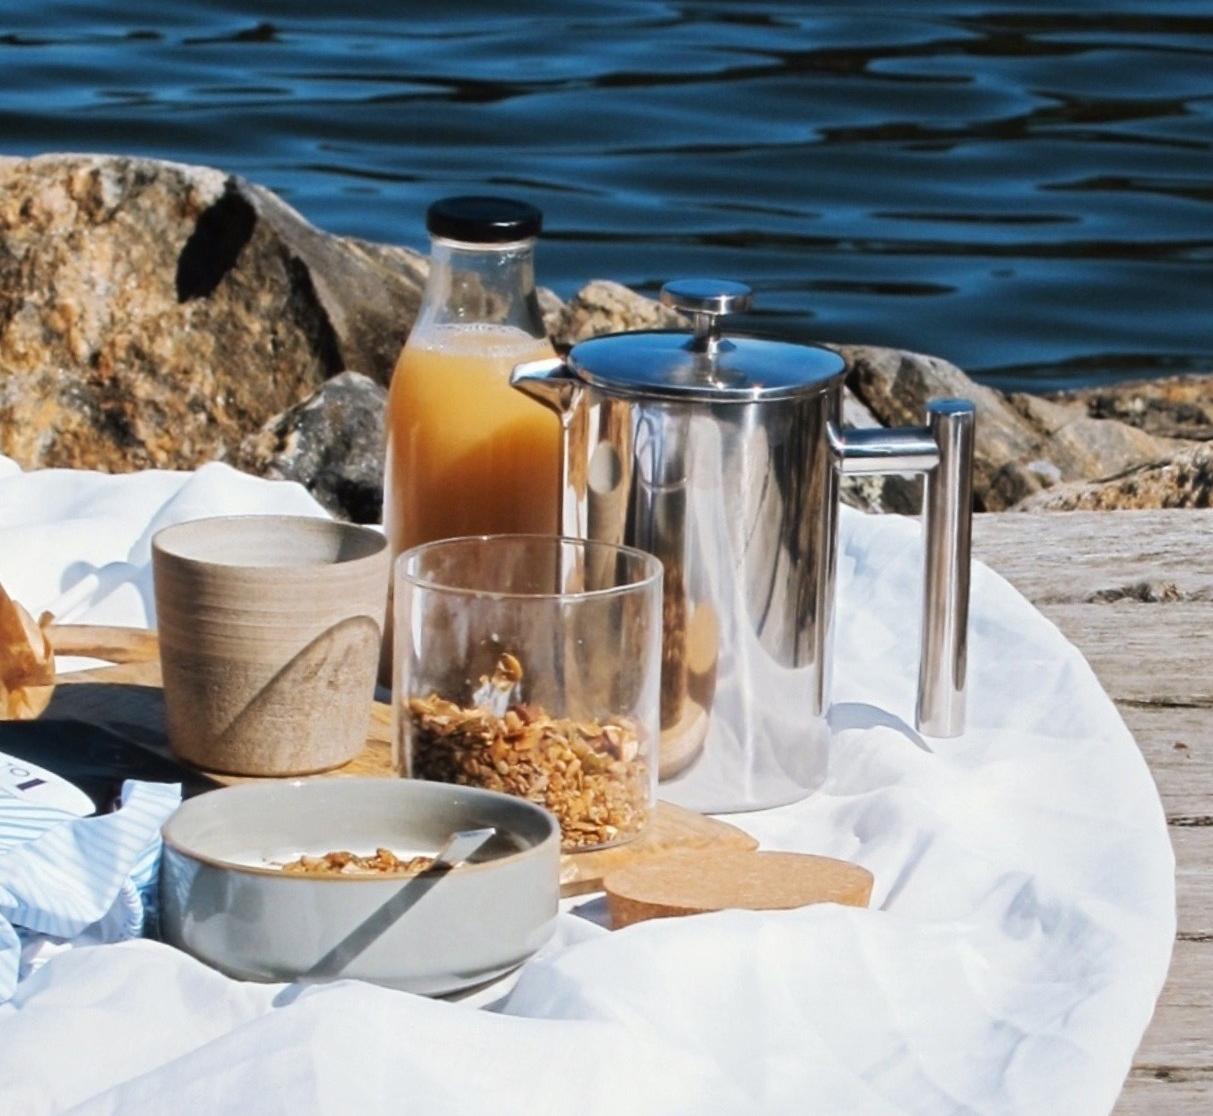 Aamiainen ulkona aamupala piknik granola pressopannu kahvi aamukahvi lautaset kulhot astiat